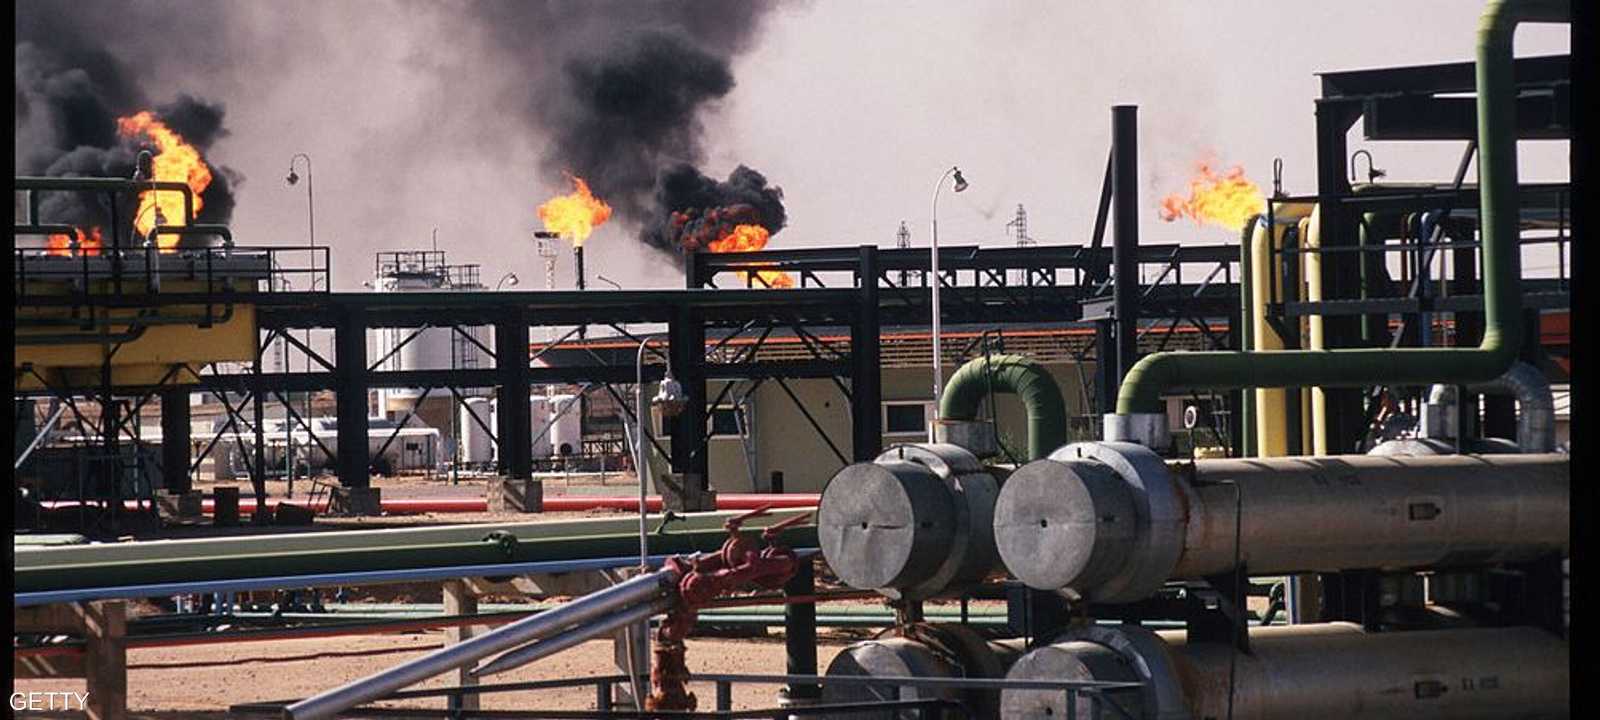 بلغت إيرادات النفط والغاز 33 مليار دولار في 2019